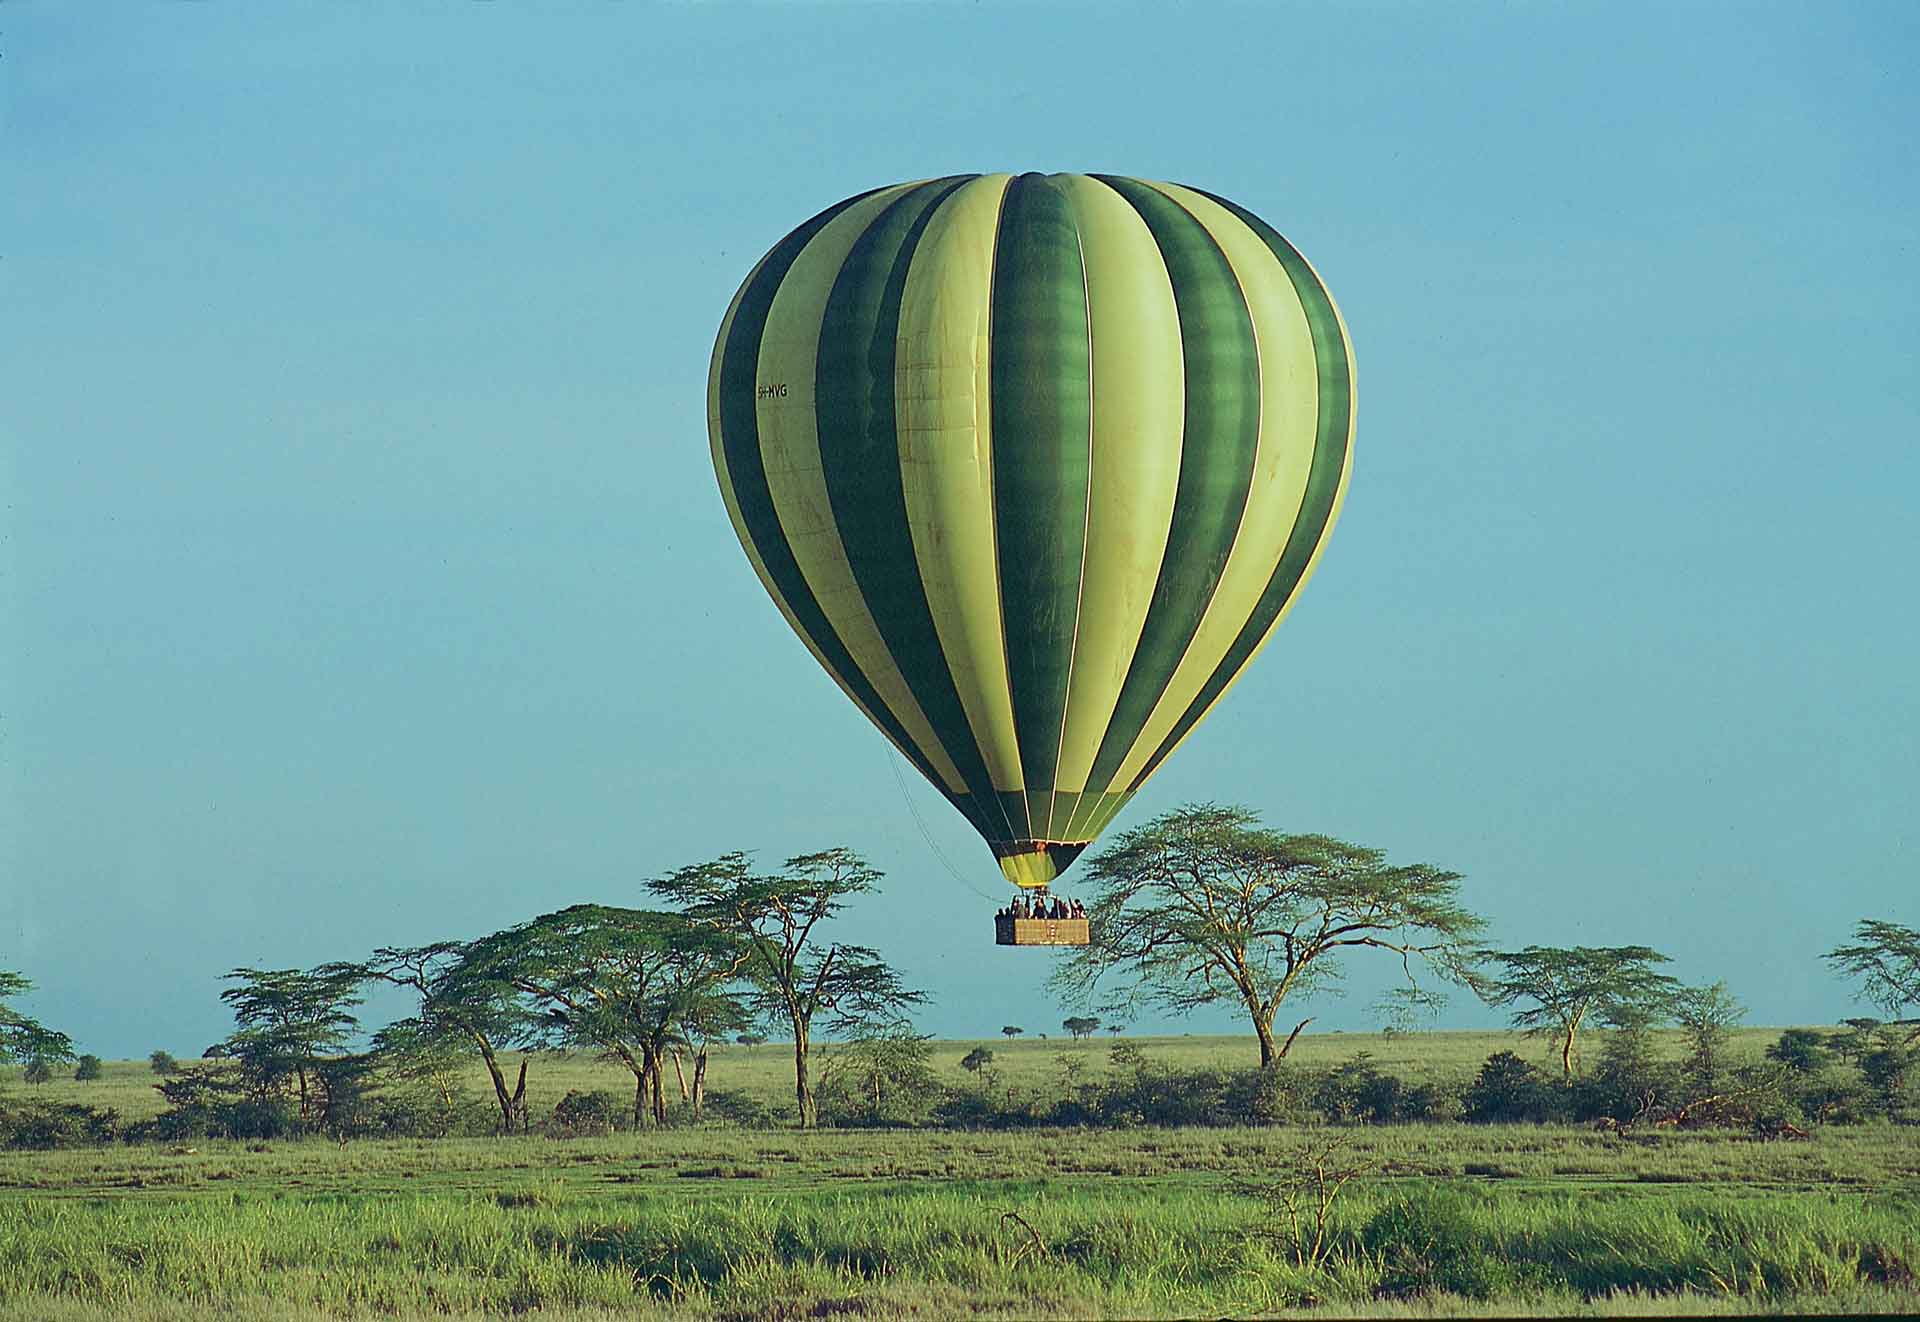 Balloon Safari at the Famous Serengeti National Park